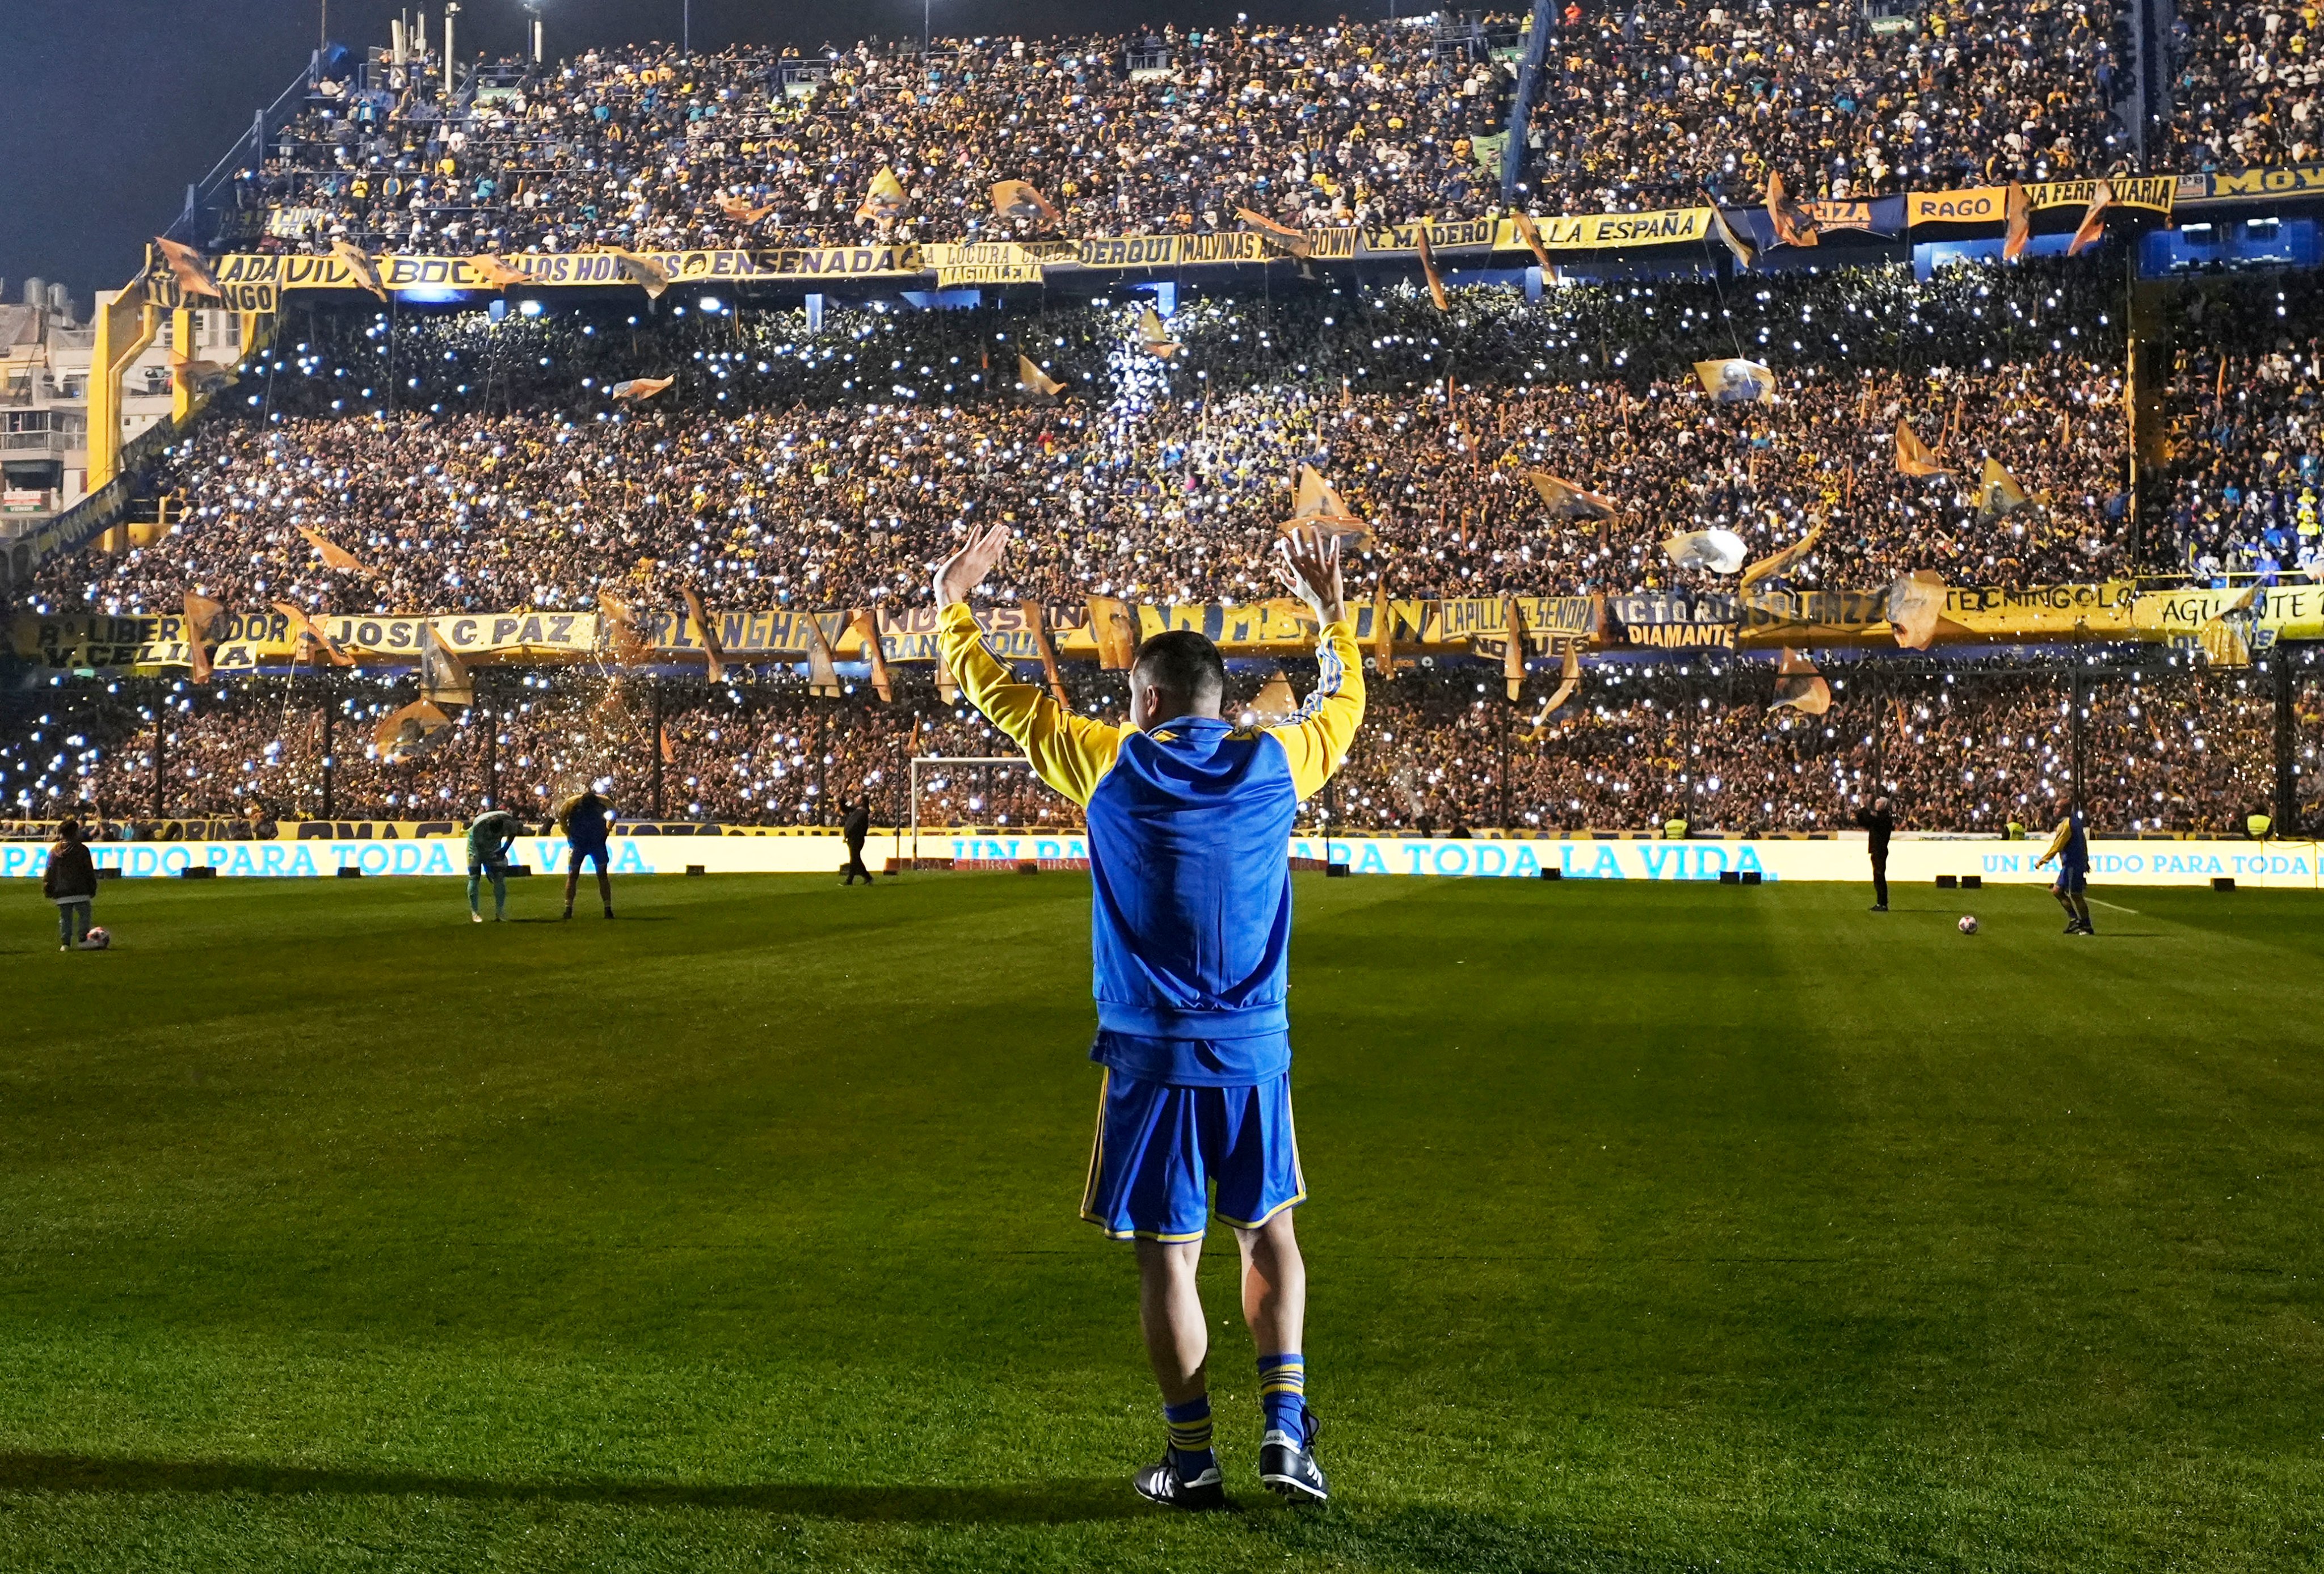 La noche de Román: fútbol, emociones y ovaciones en La Bombonera